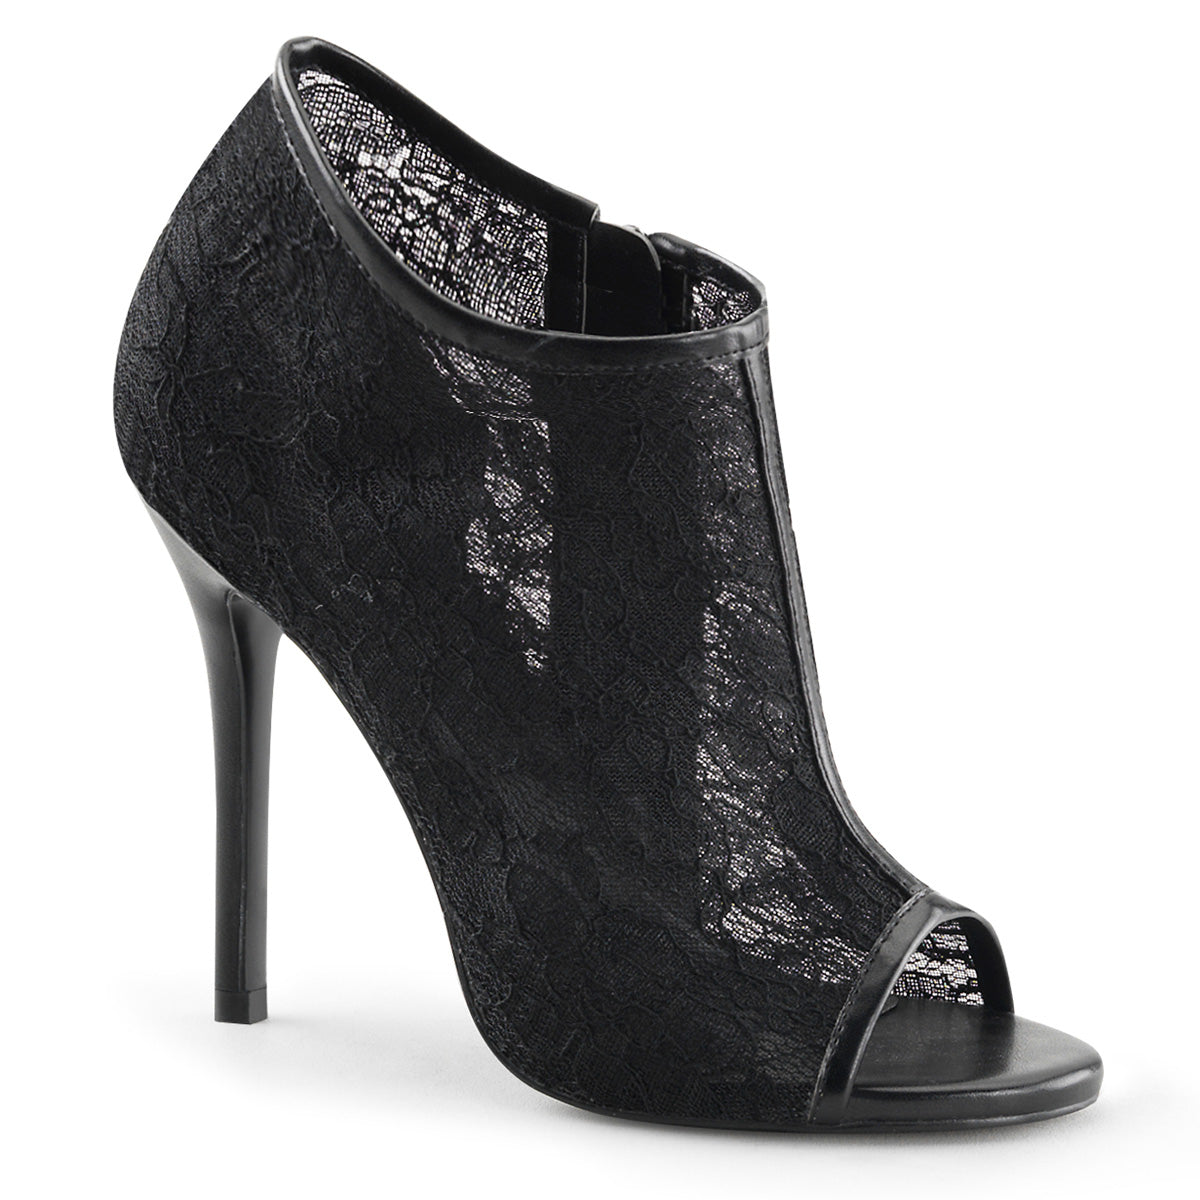 Amuse-56 Fabulicious 5-дюймовый каблук черный кружевной сетки сексуальная обувь